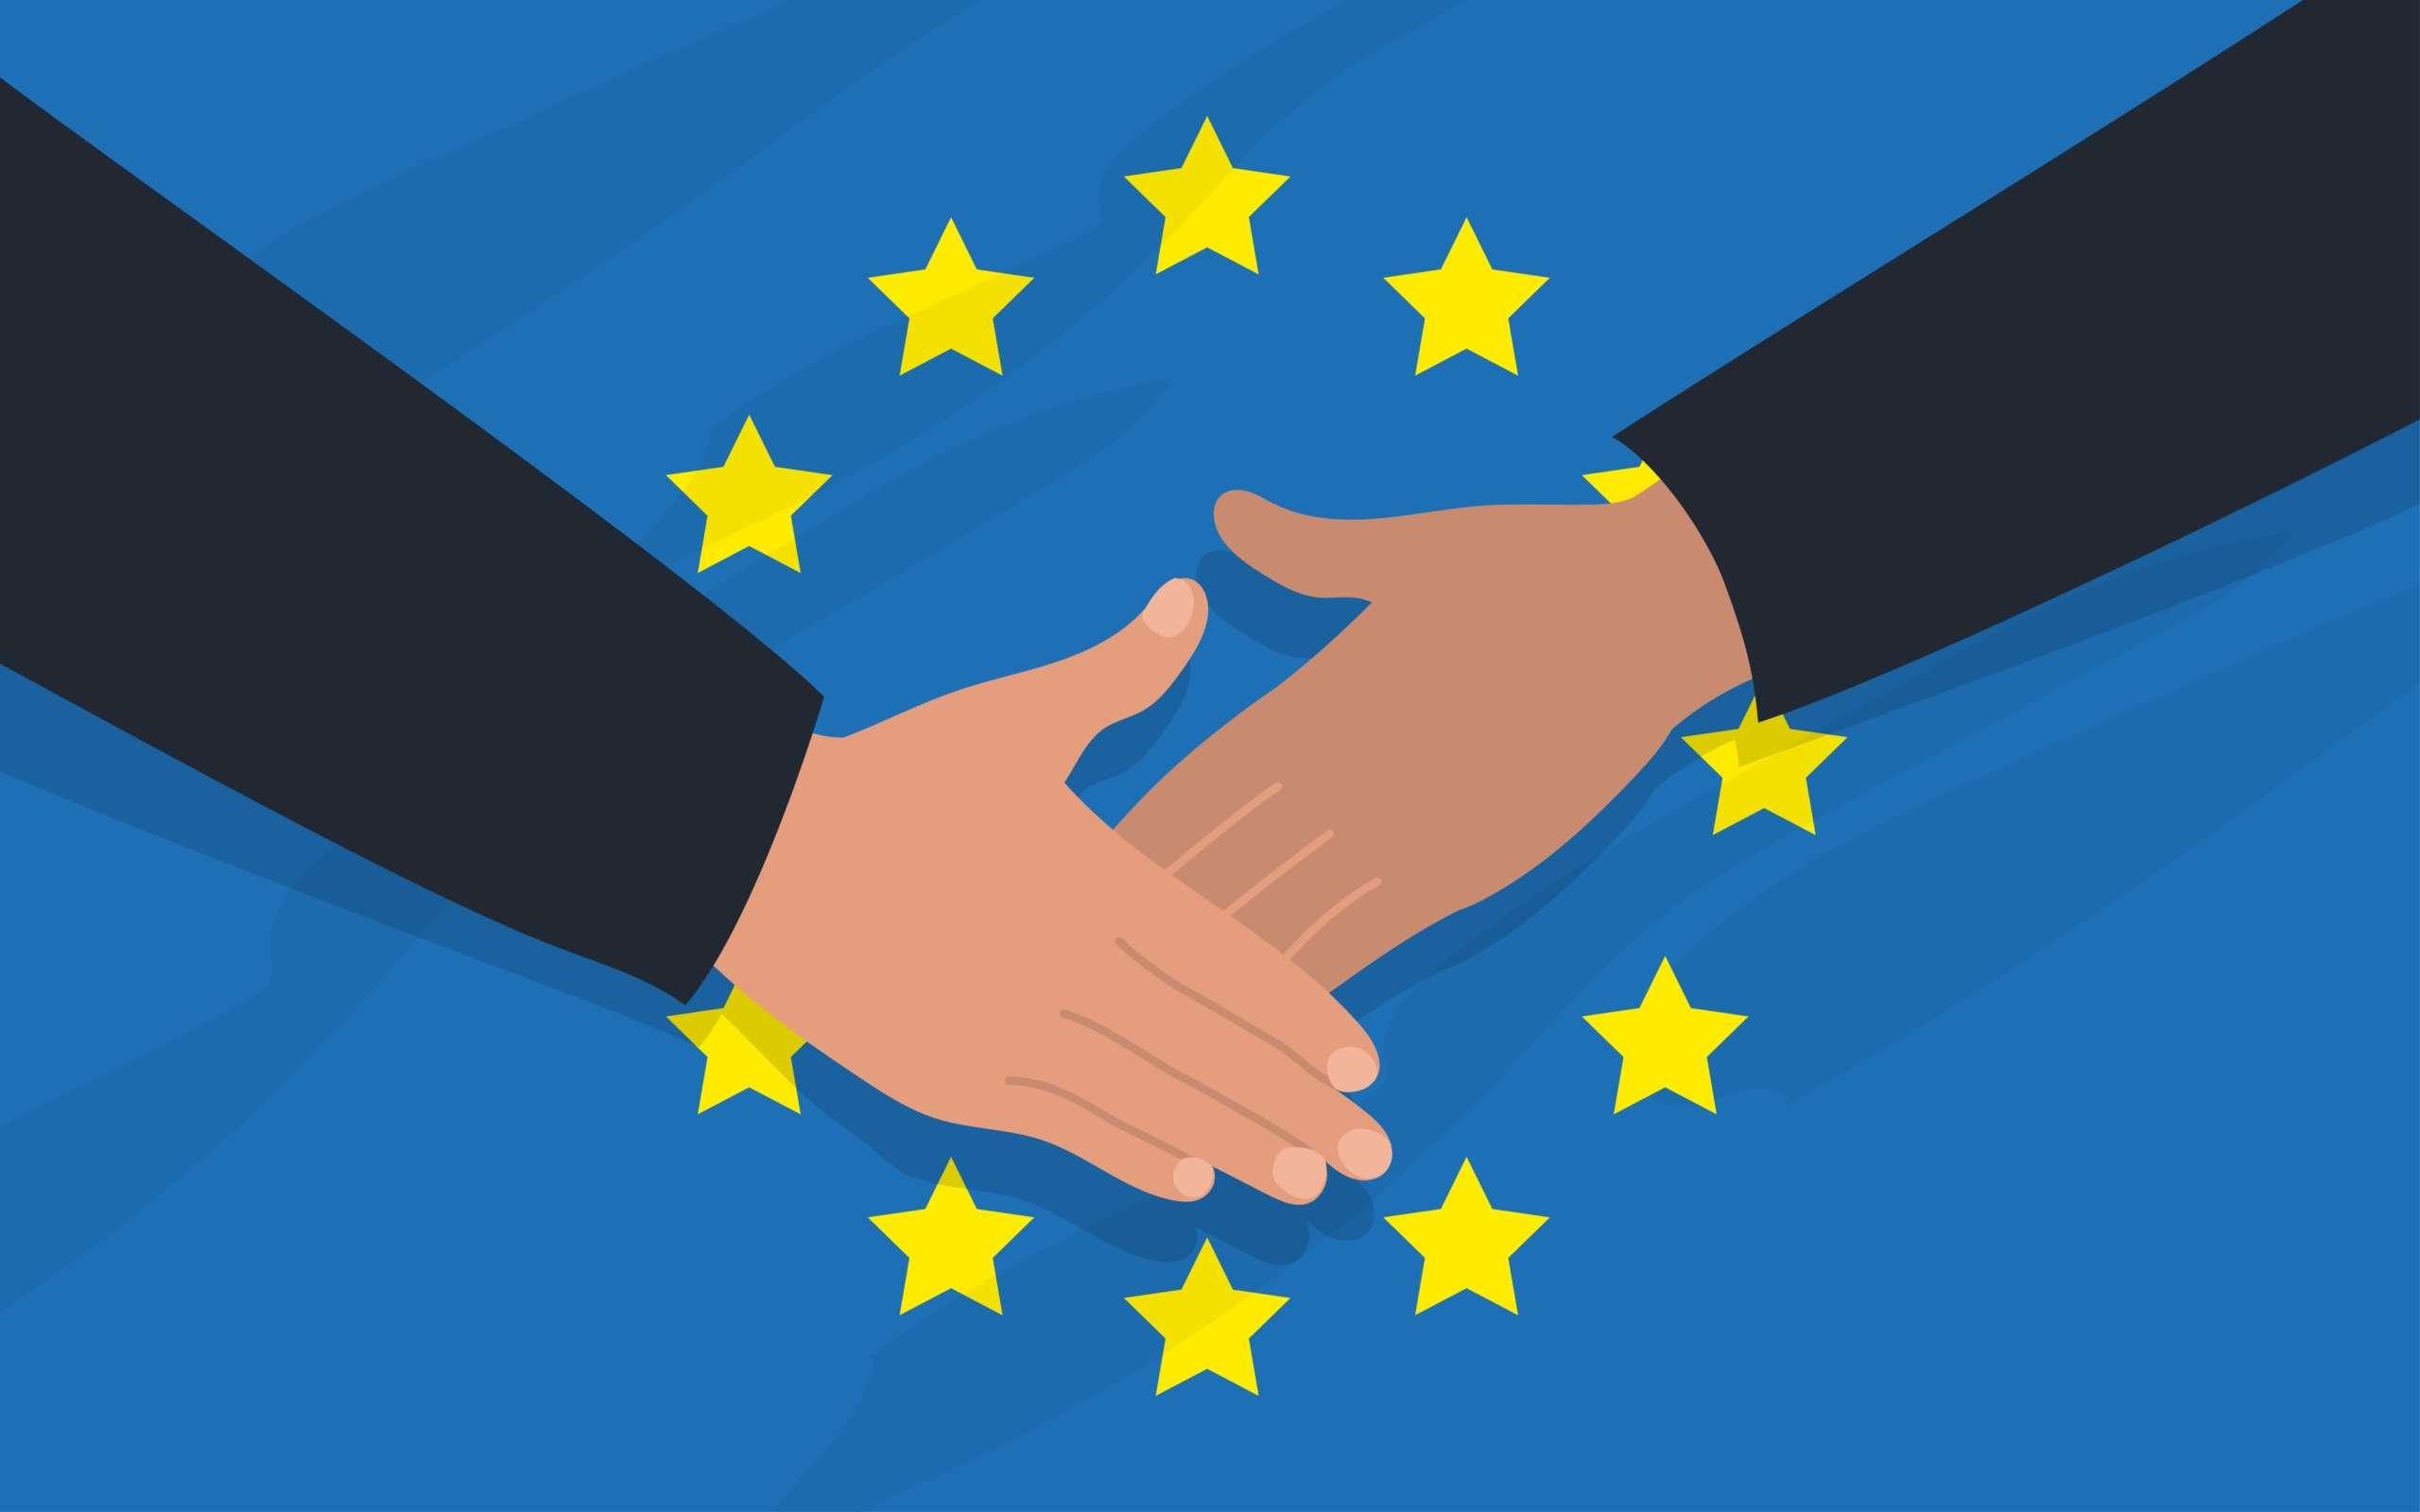 Händedruck von zwei Personen auf dem Hintergrund der EU-Flagge. Diplomatie, Politik, Freundschaft. Vektorbild.